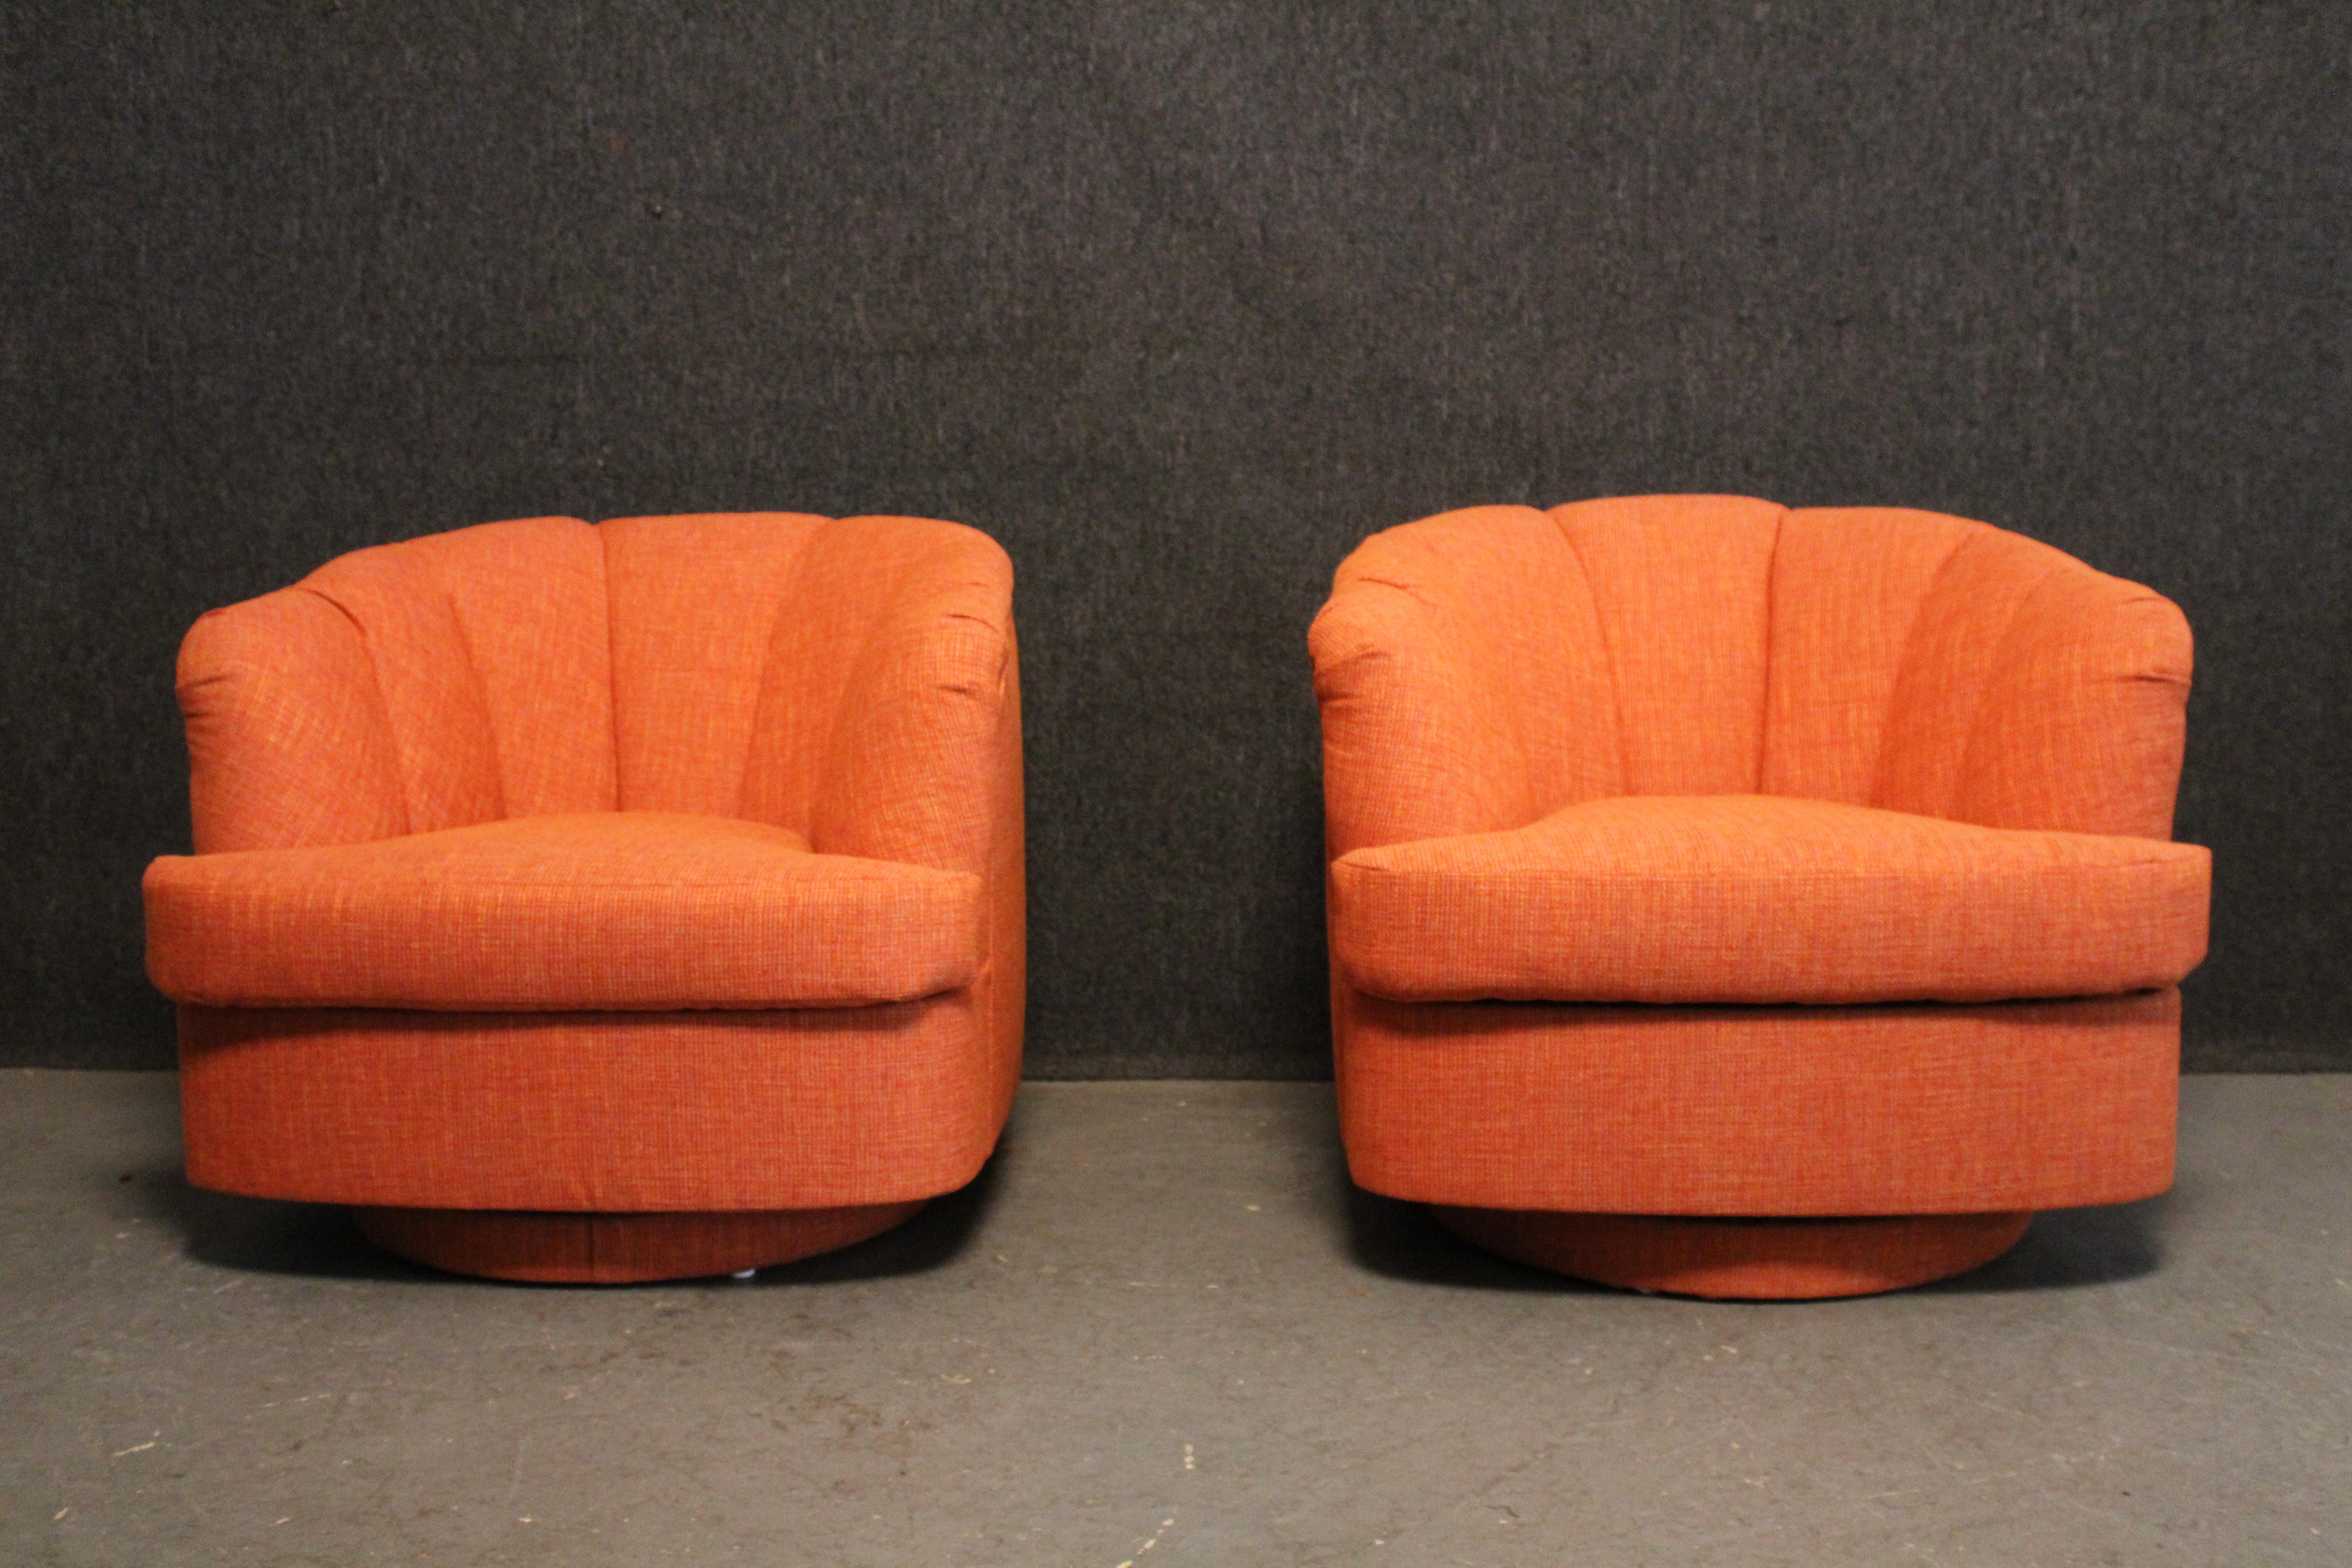 Dieses fantastische Paar neu gepolsterter Mid-Century Modern Lounge Chairs der Marke Directional Furniture von Paul McCobb verbindet einen Vintage-Look mit einem modernen Gefühl.  Die übergepolsterten, drehbaren Stühle haben eine tiefe, wannenartige